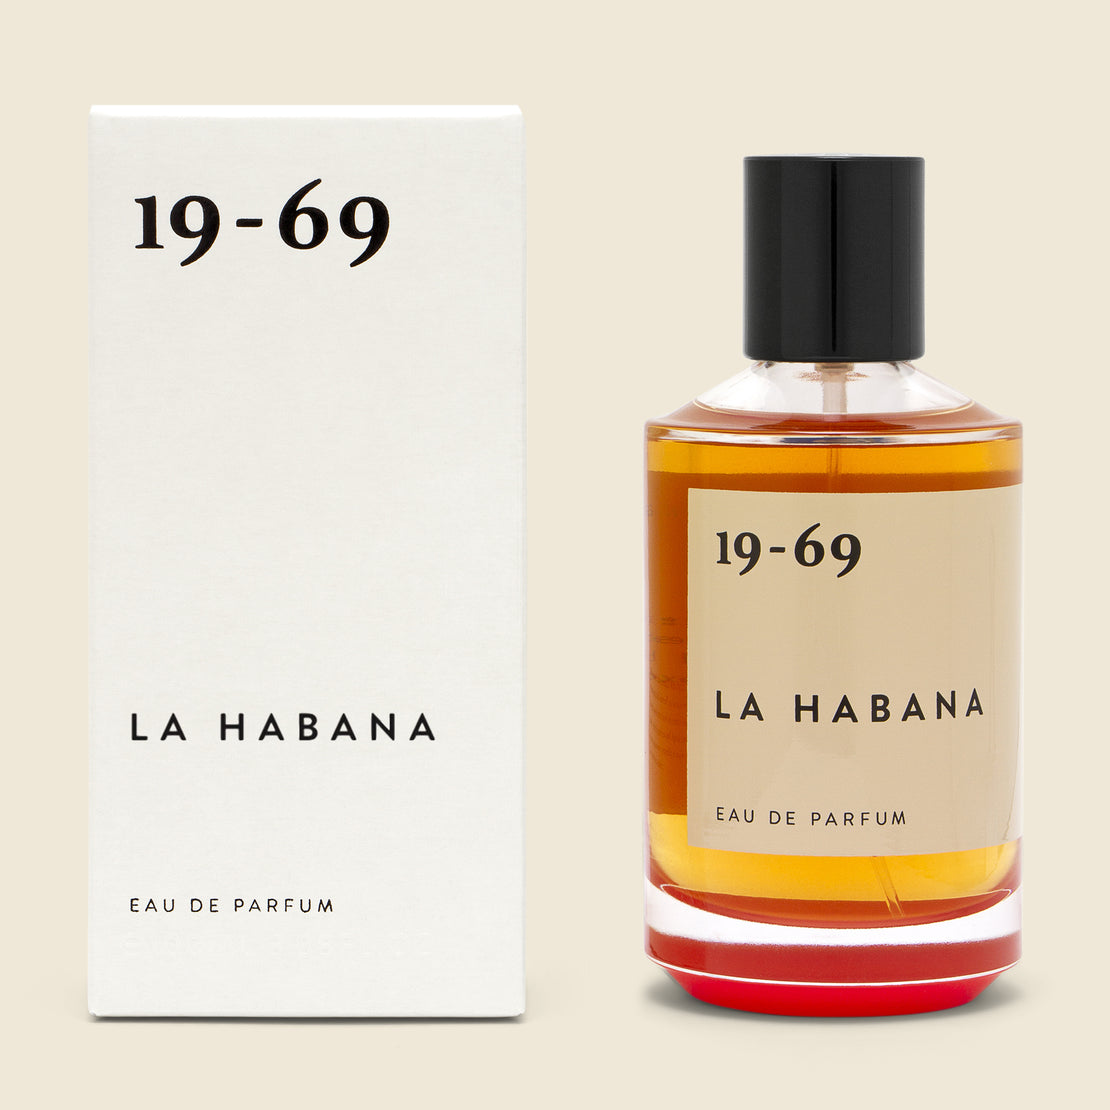 19-69 La Habana Eau de Parfum